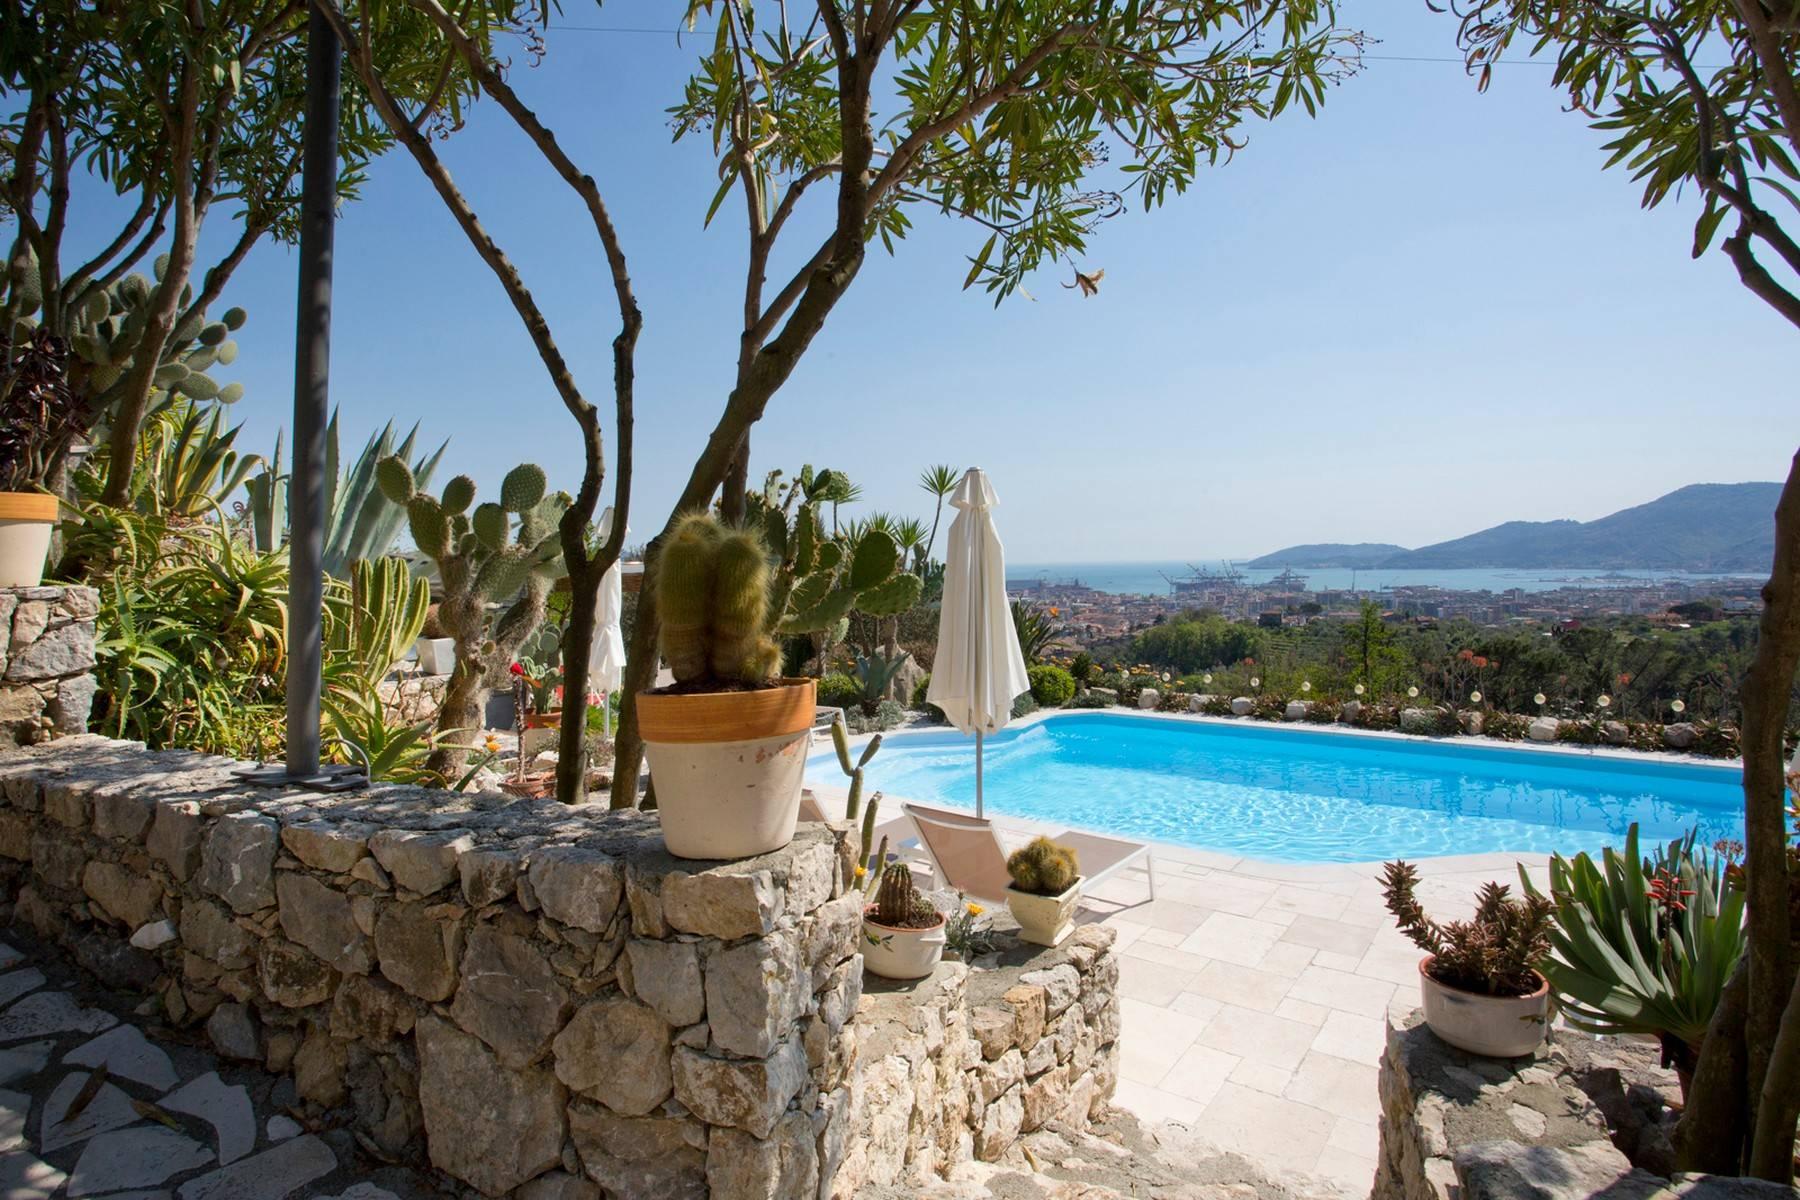 Stunning villa overlooking the bay of La Spezia - 4